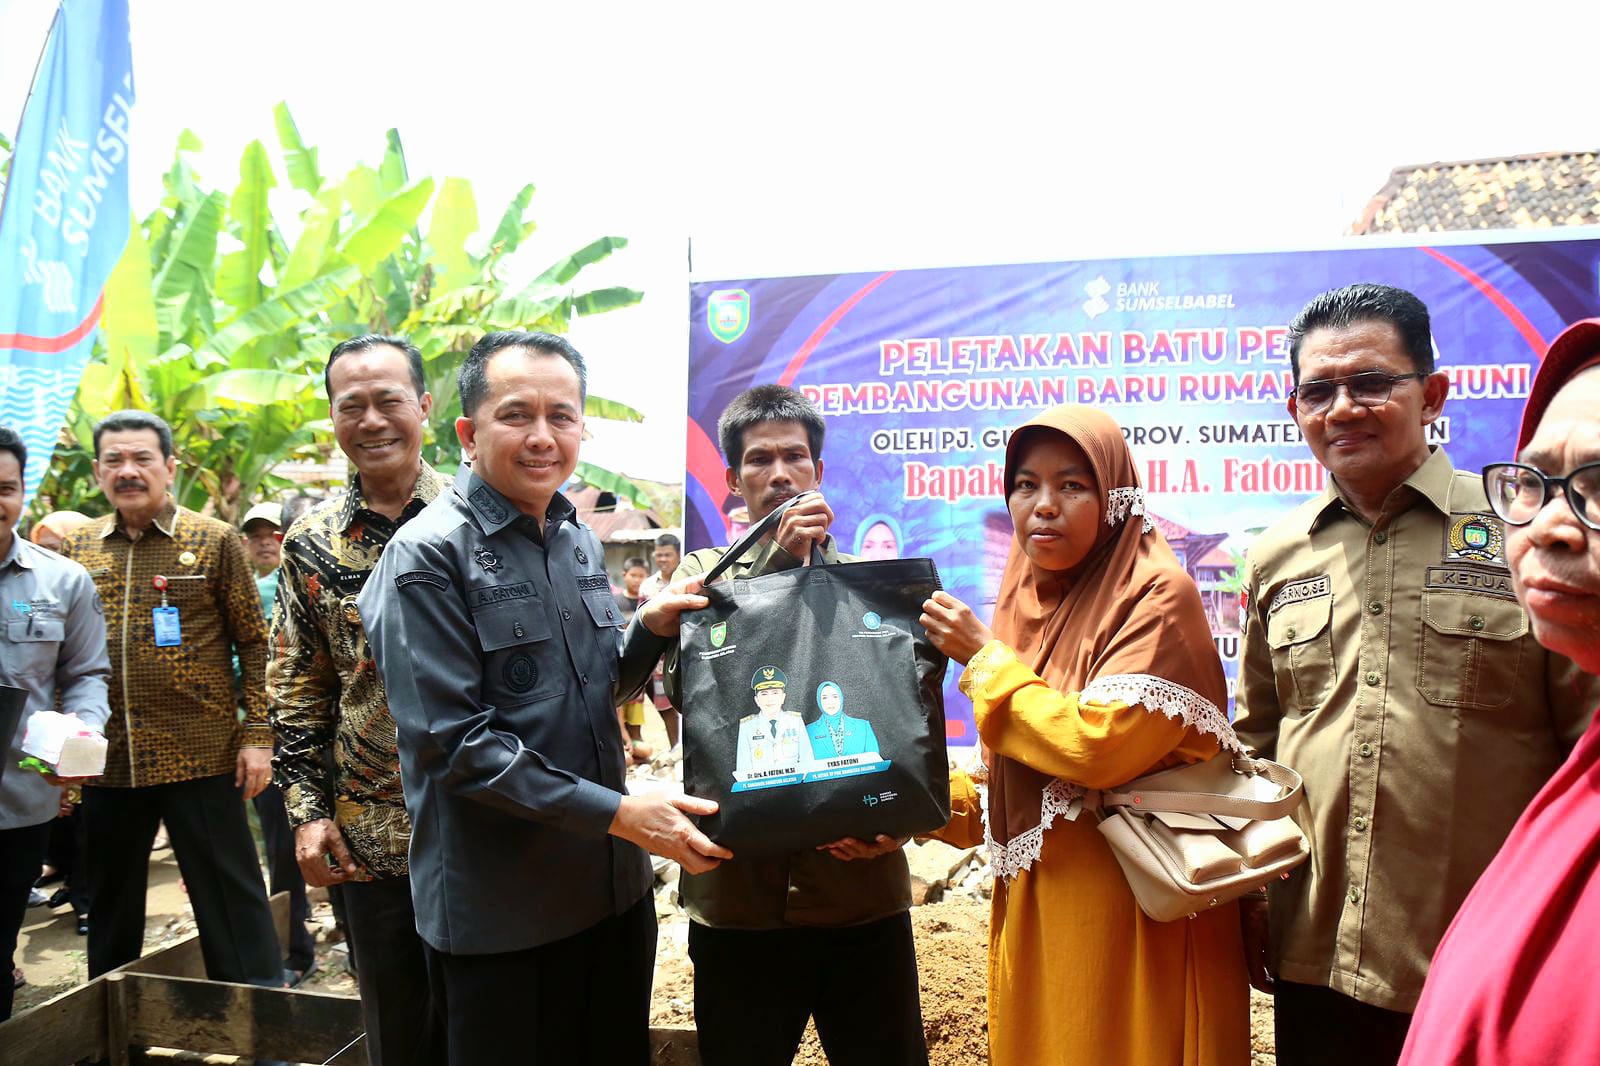 Pj Gubernur Sumsel Agus Fatoni Berikan Bantuan Sembako di Kota Prabumulih, Atasi Kemiskinan Ekstrem